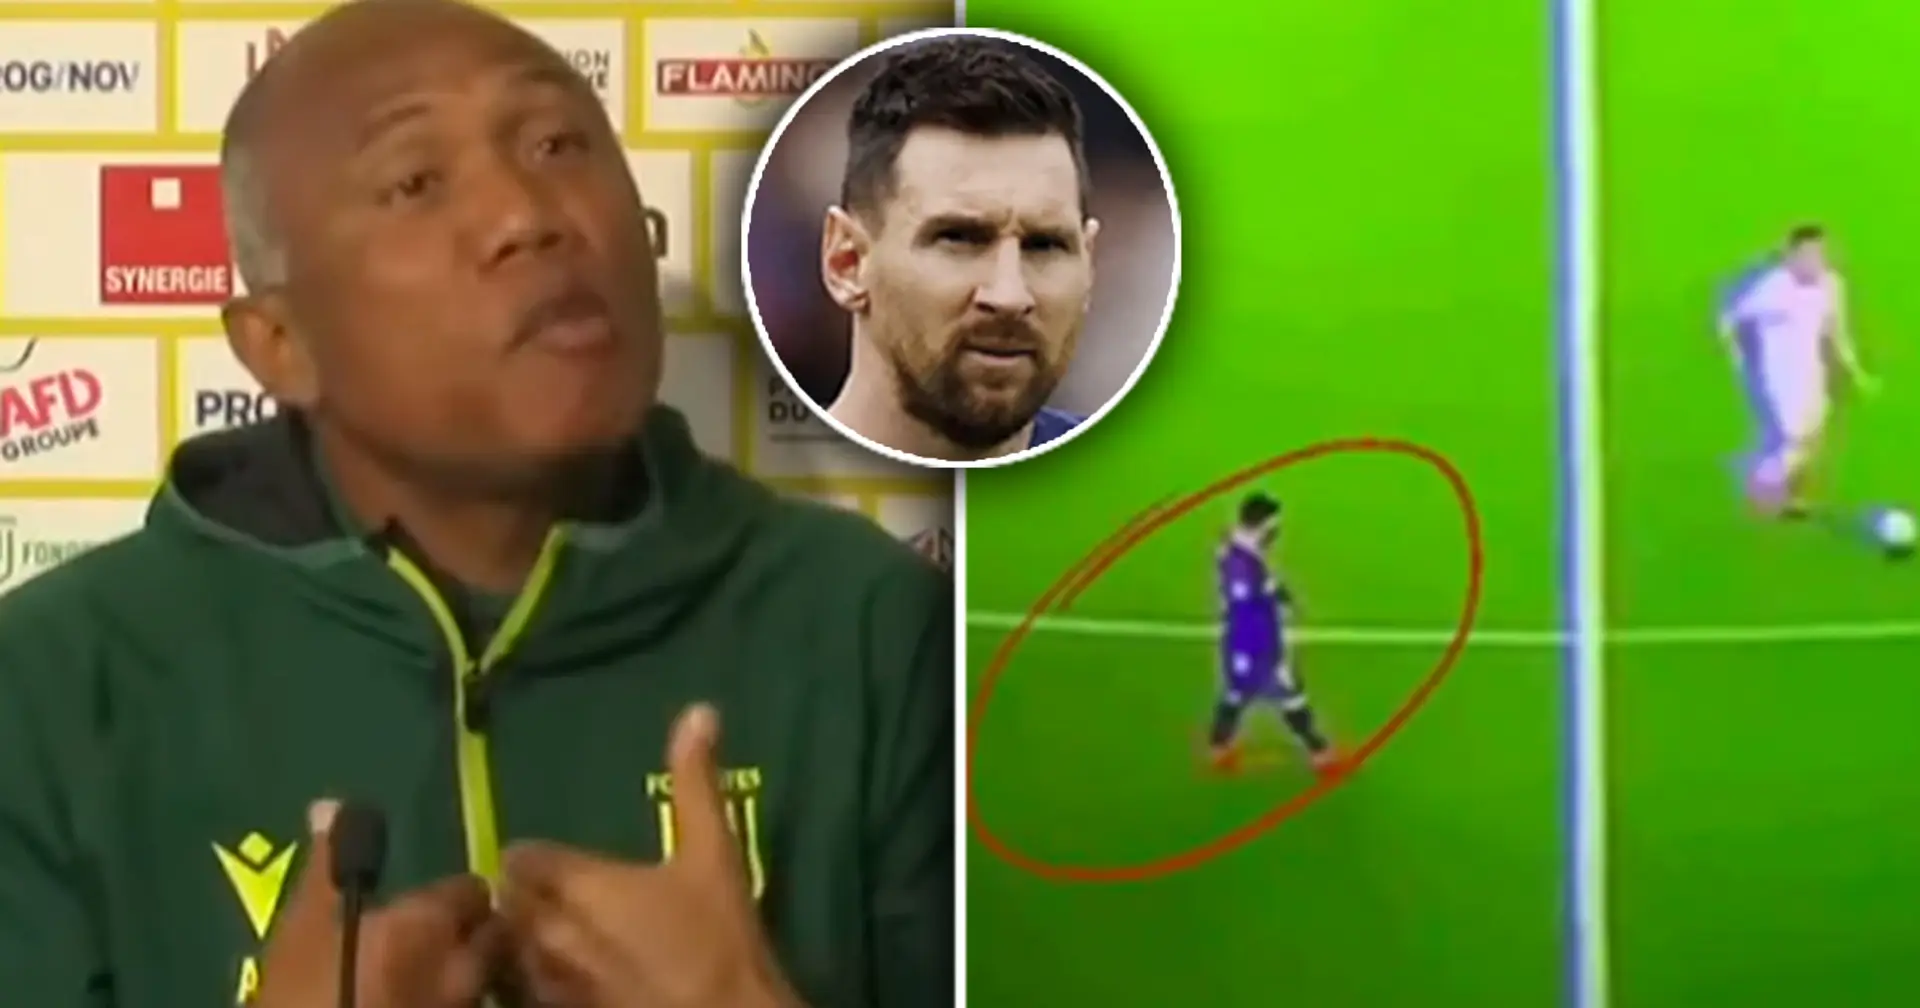 "Wenn ich ihn hätte, würde ich ihm sagen, dass er nie defensiv spielen soll": Der Trainer von Nantes nimmt das Klischee vom "faulen Messi" aufs Korn